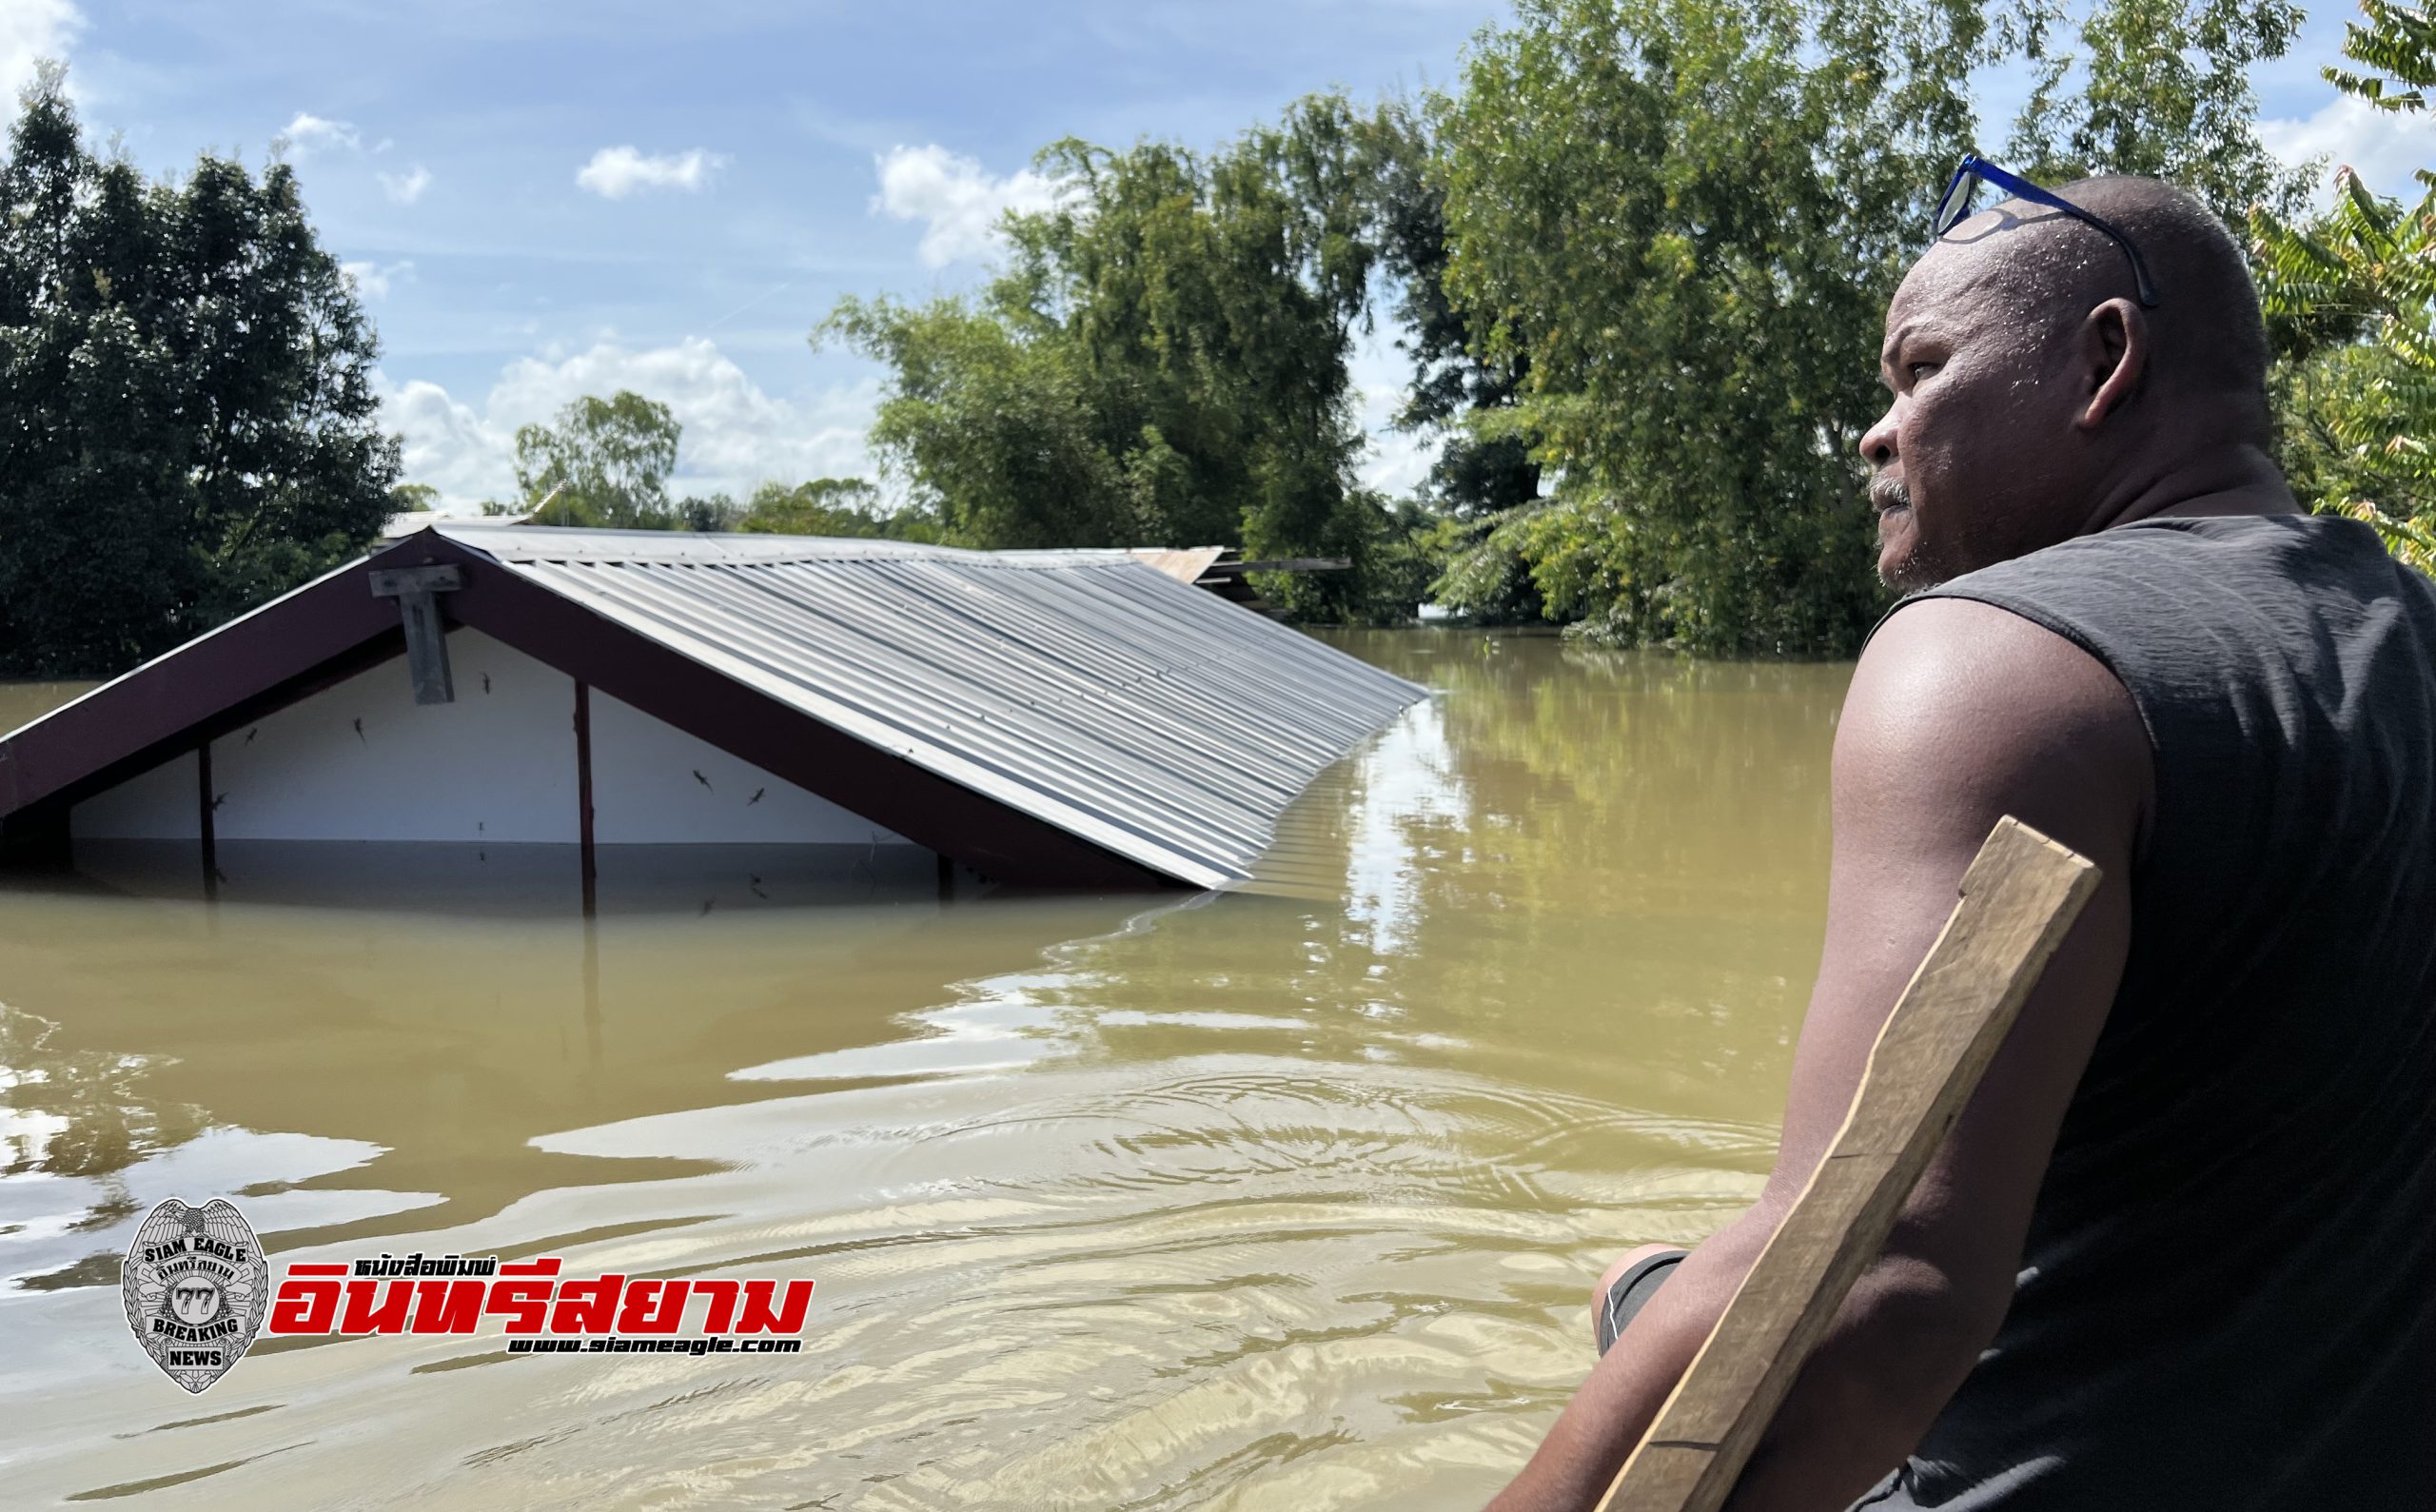 ศรีสะเกษ-ประธานชุมชนหนองหมูร่ำไห้น้ำท่วมบ้าน 100 หลังจมใต้น้ำเสียหาย